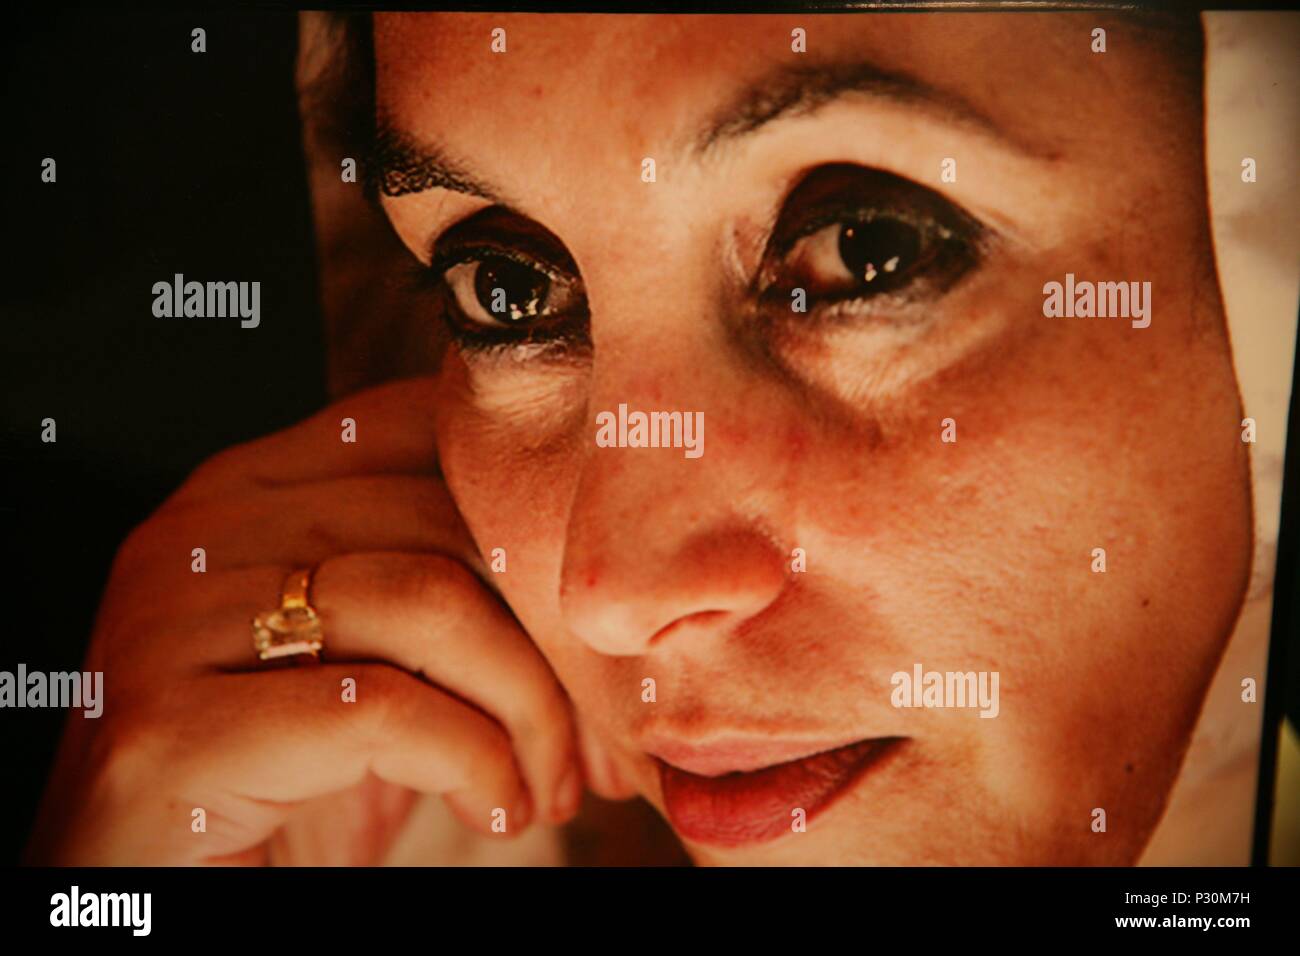 Original Film Titel: Benazir Bhutto. Englischer Titel: BHUTTO. Regisseur: JESSICA A. HERNANDEZ, Johnny O'Hara. Jahr: 2010. Stars: Benazir Bhutto. Credit: GELB PAD PRODUKTIONEN/Album Stockfoto